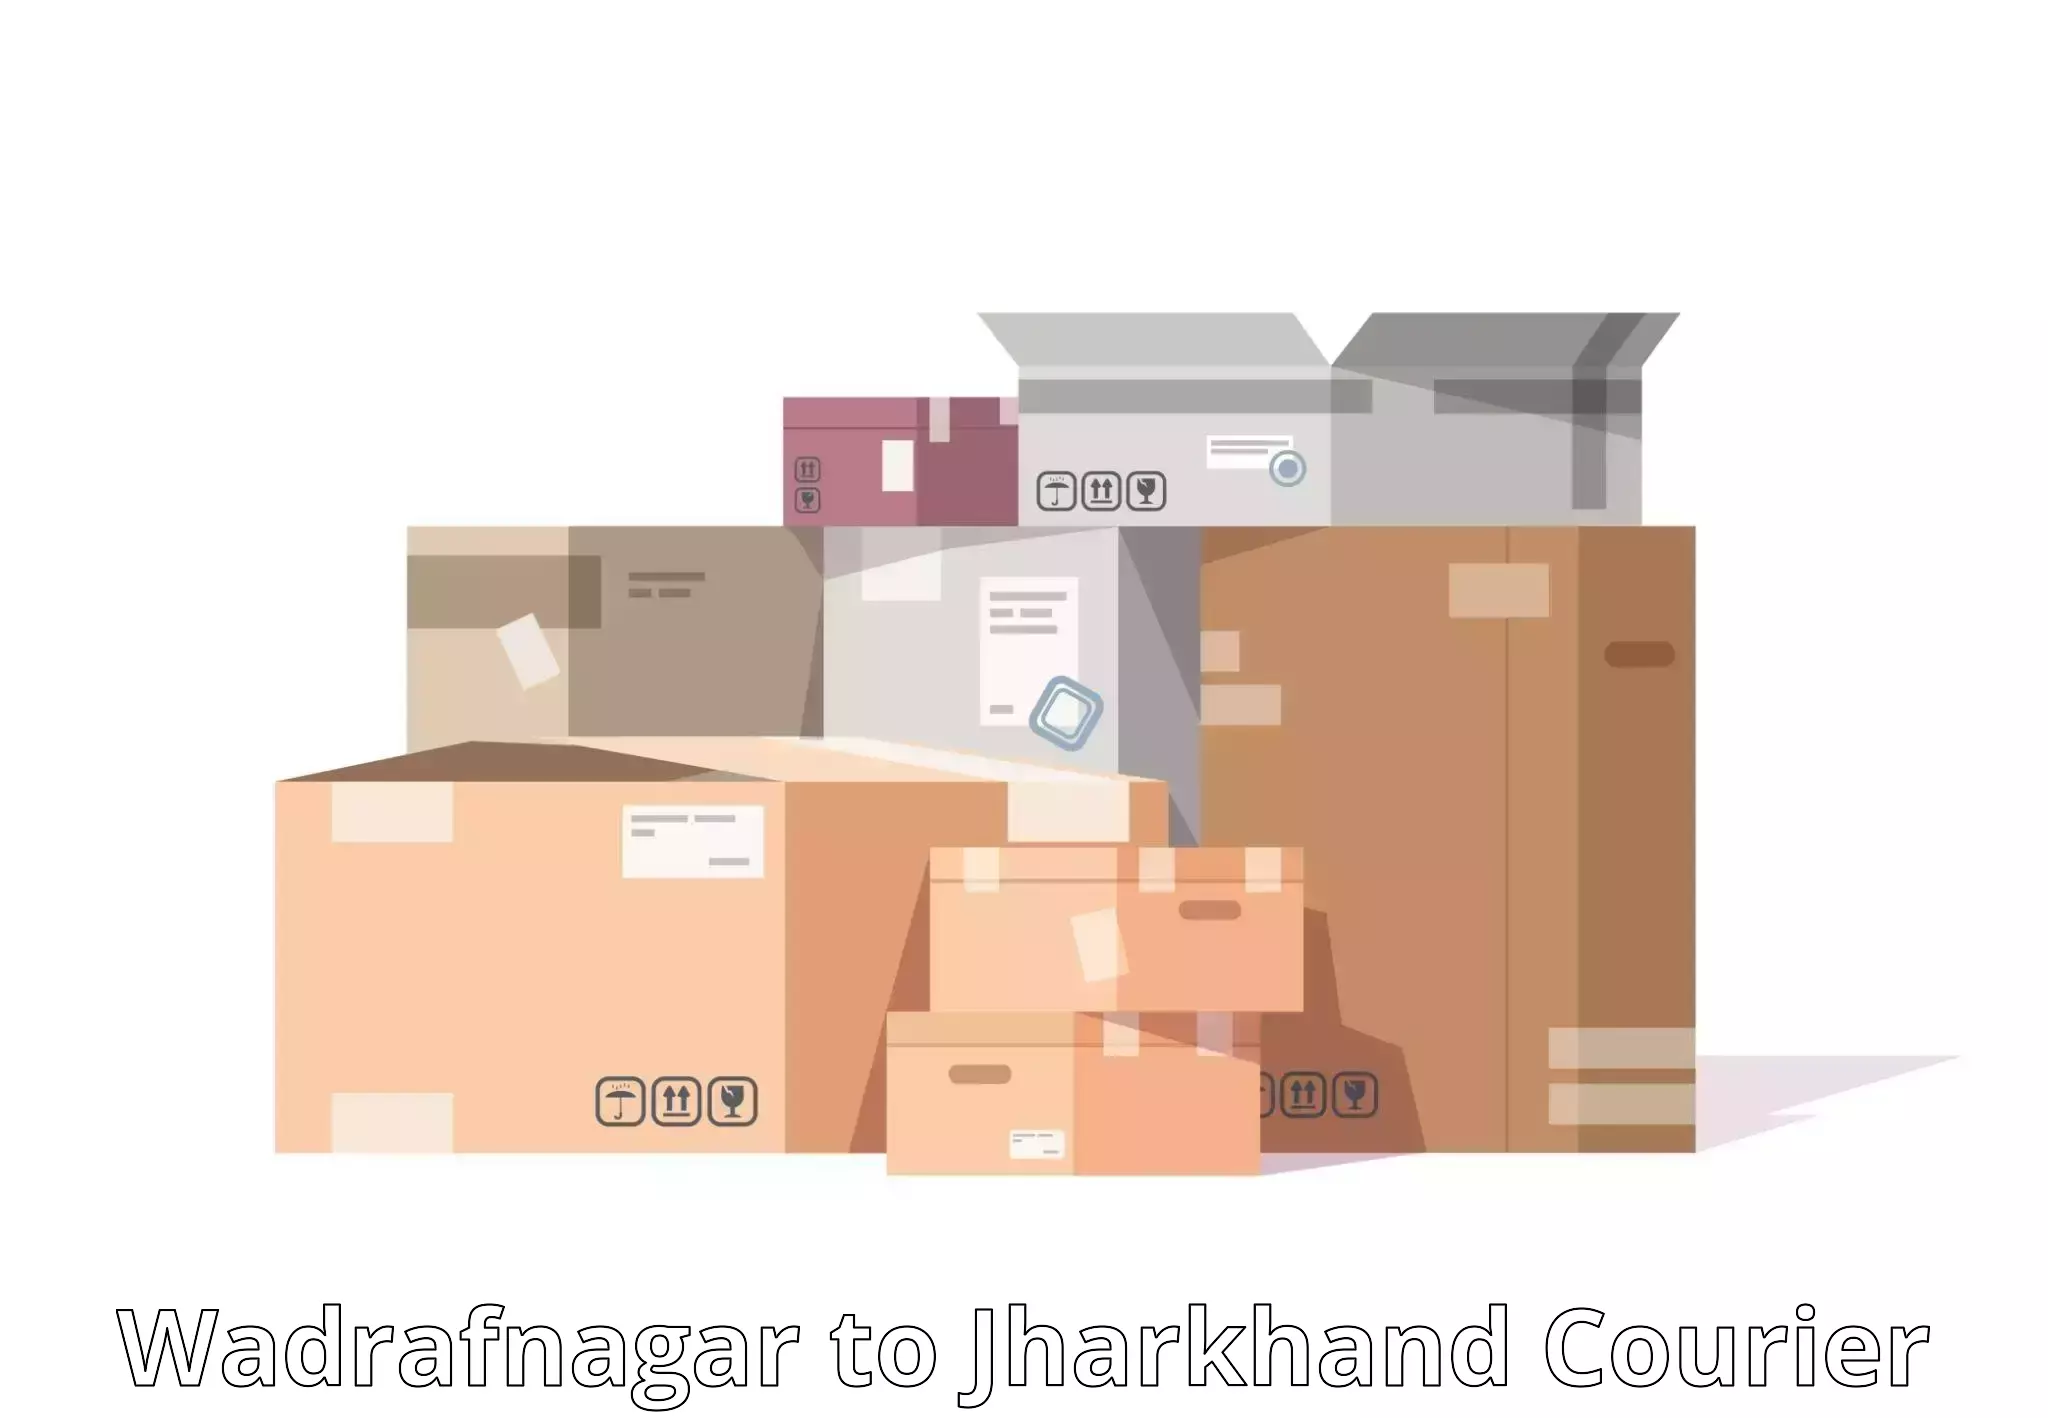 High-speed parcel service Wadrafnagar to Medininagar